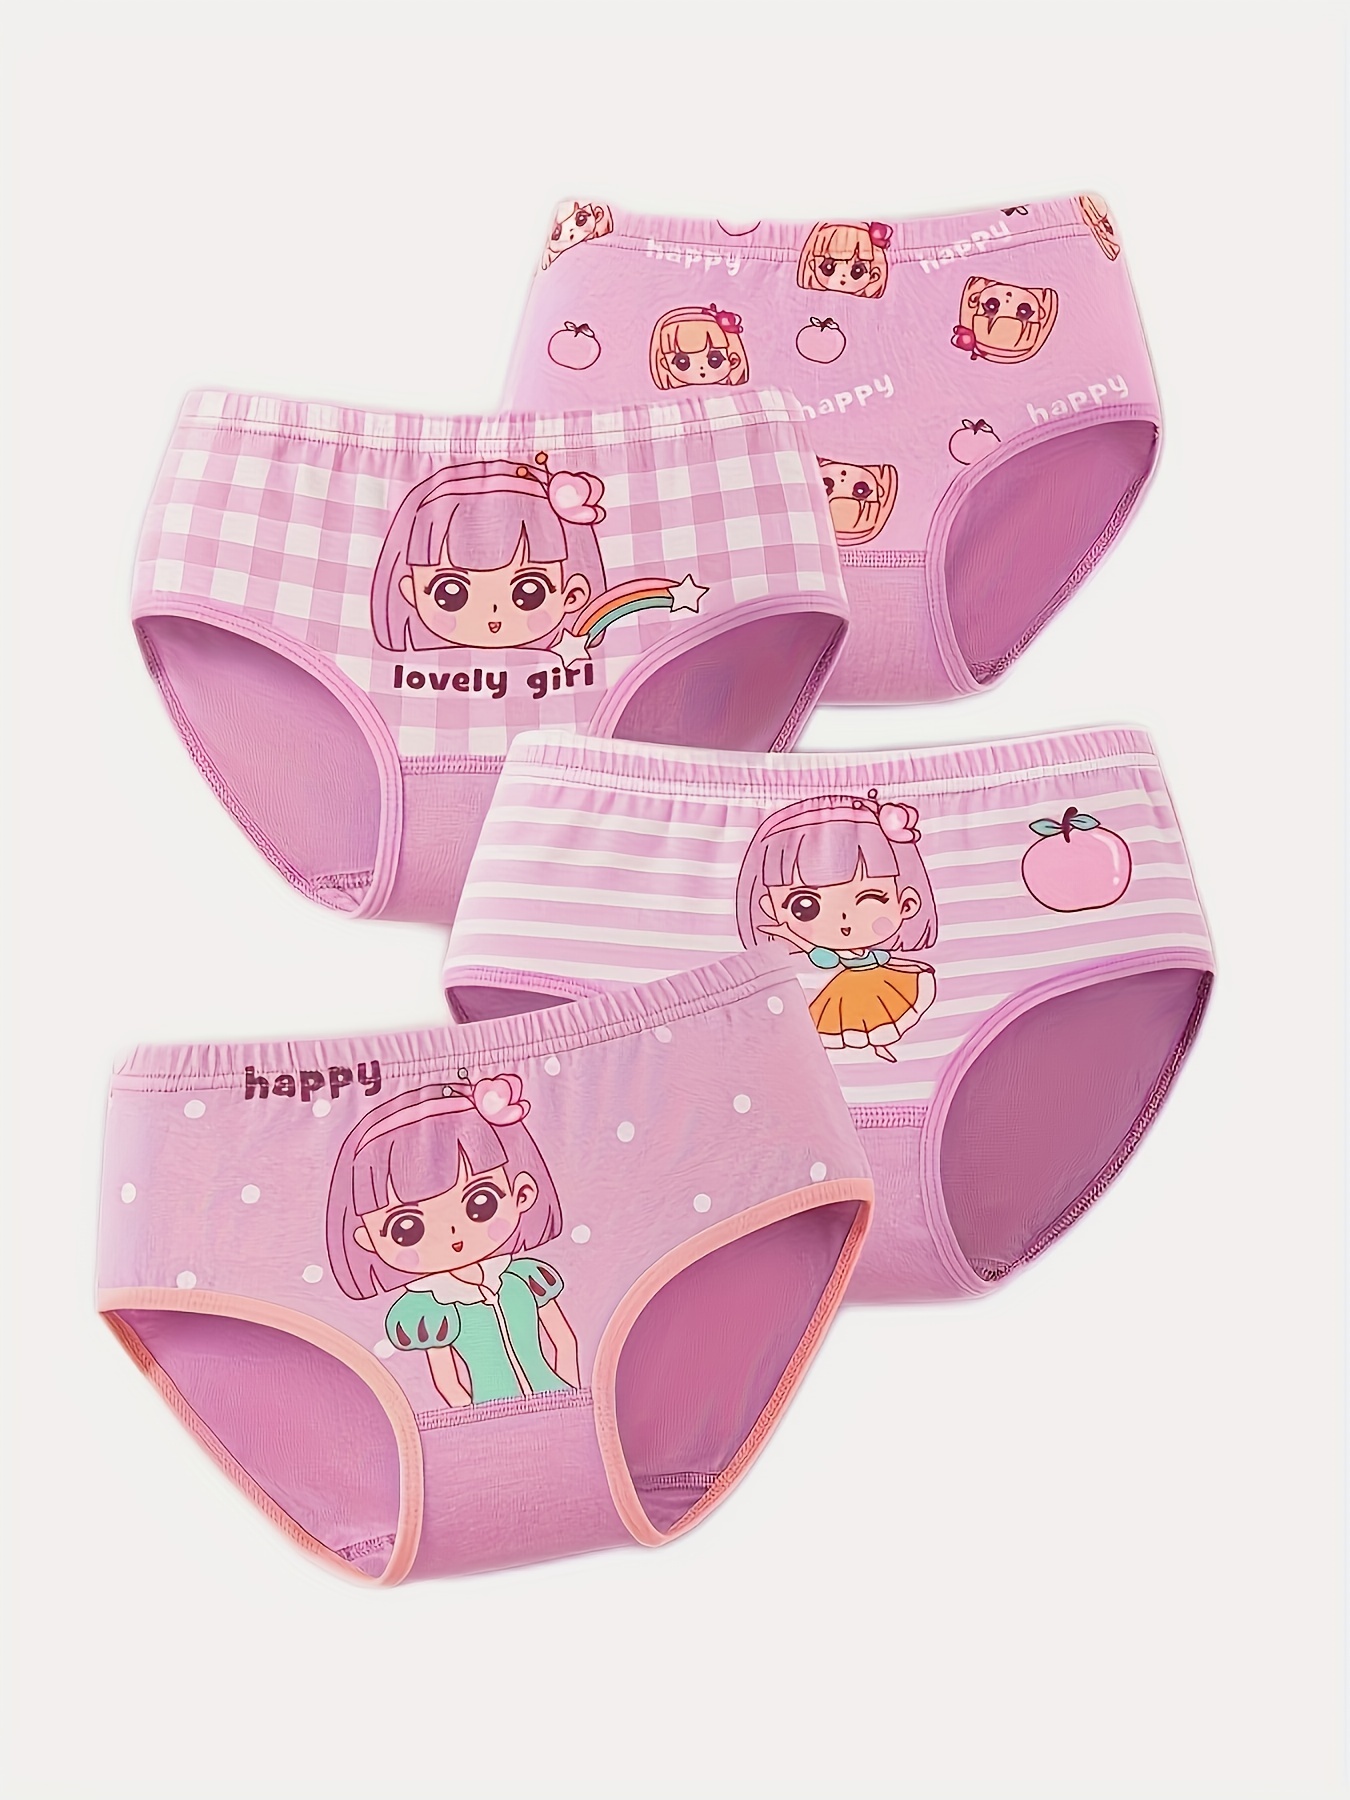 NBMART  Pinkfong Cute Women's Triangle 5-Piece Cotton Briefs Girls'  Leisure Panties Set